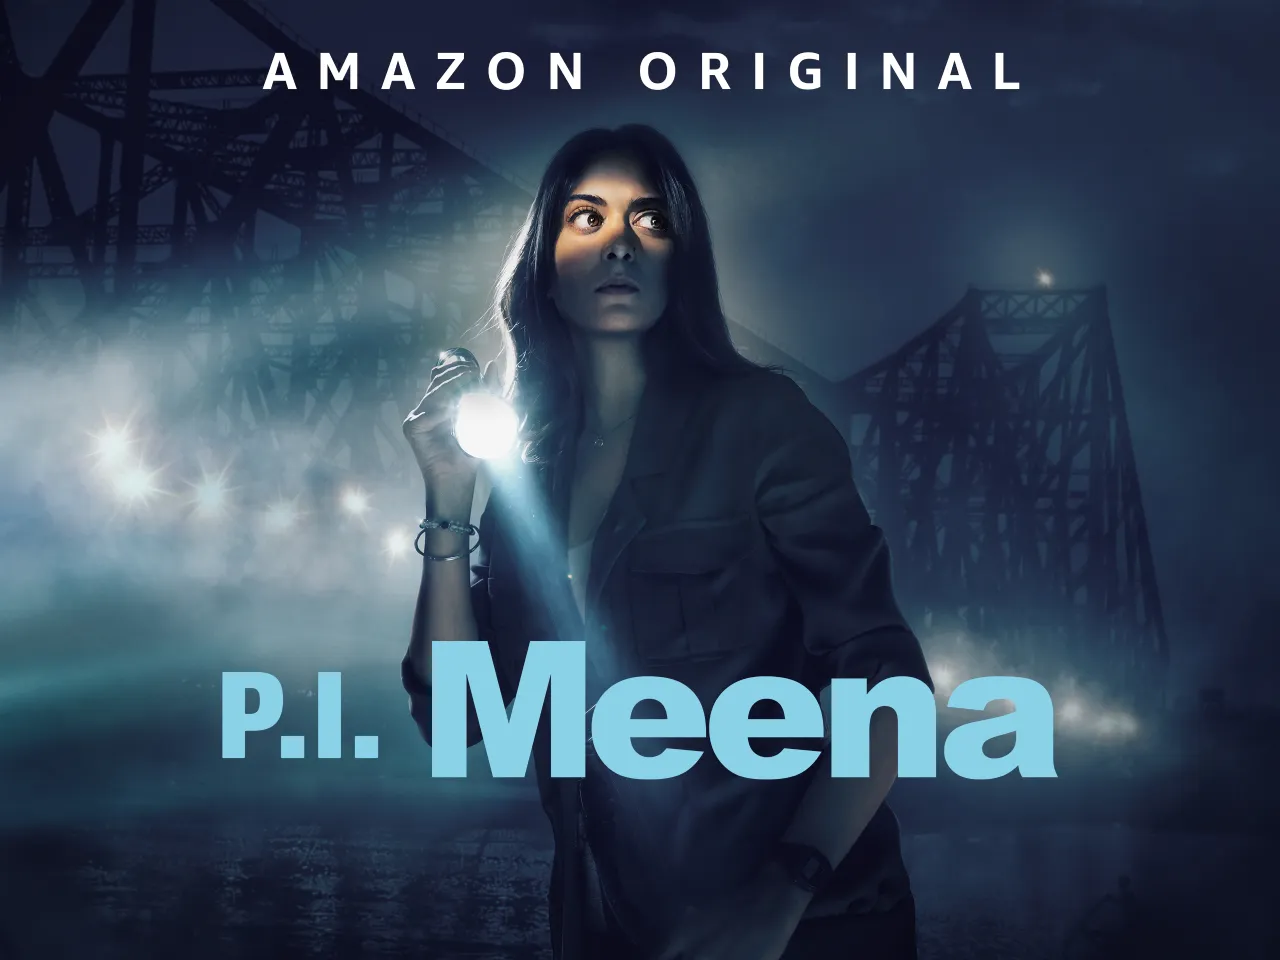 P.I. Meena